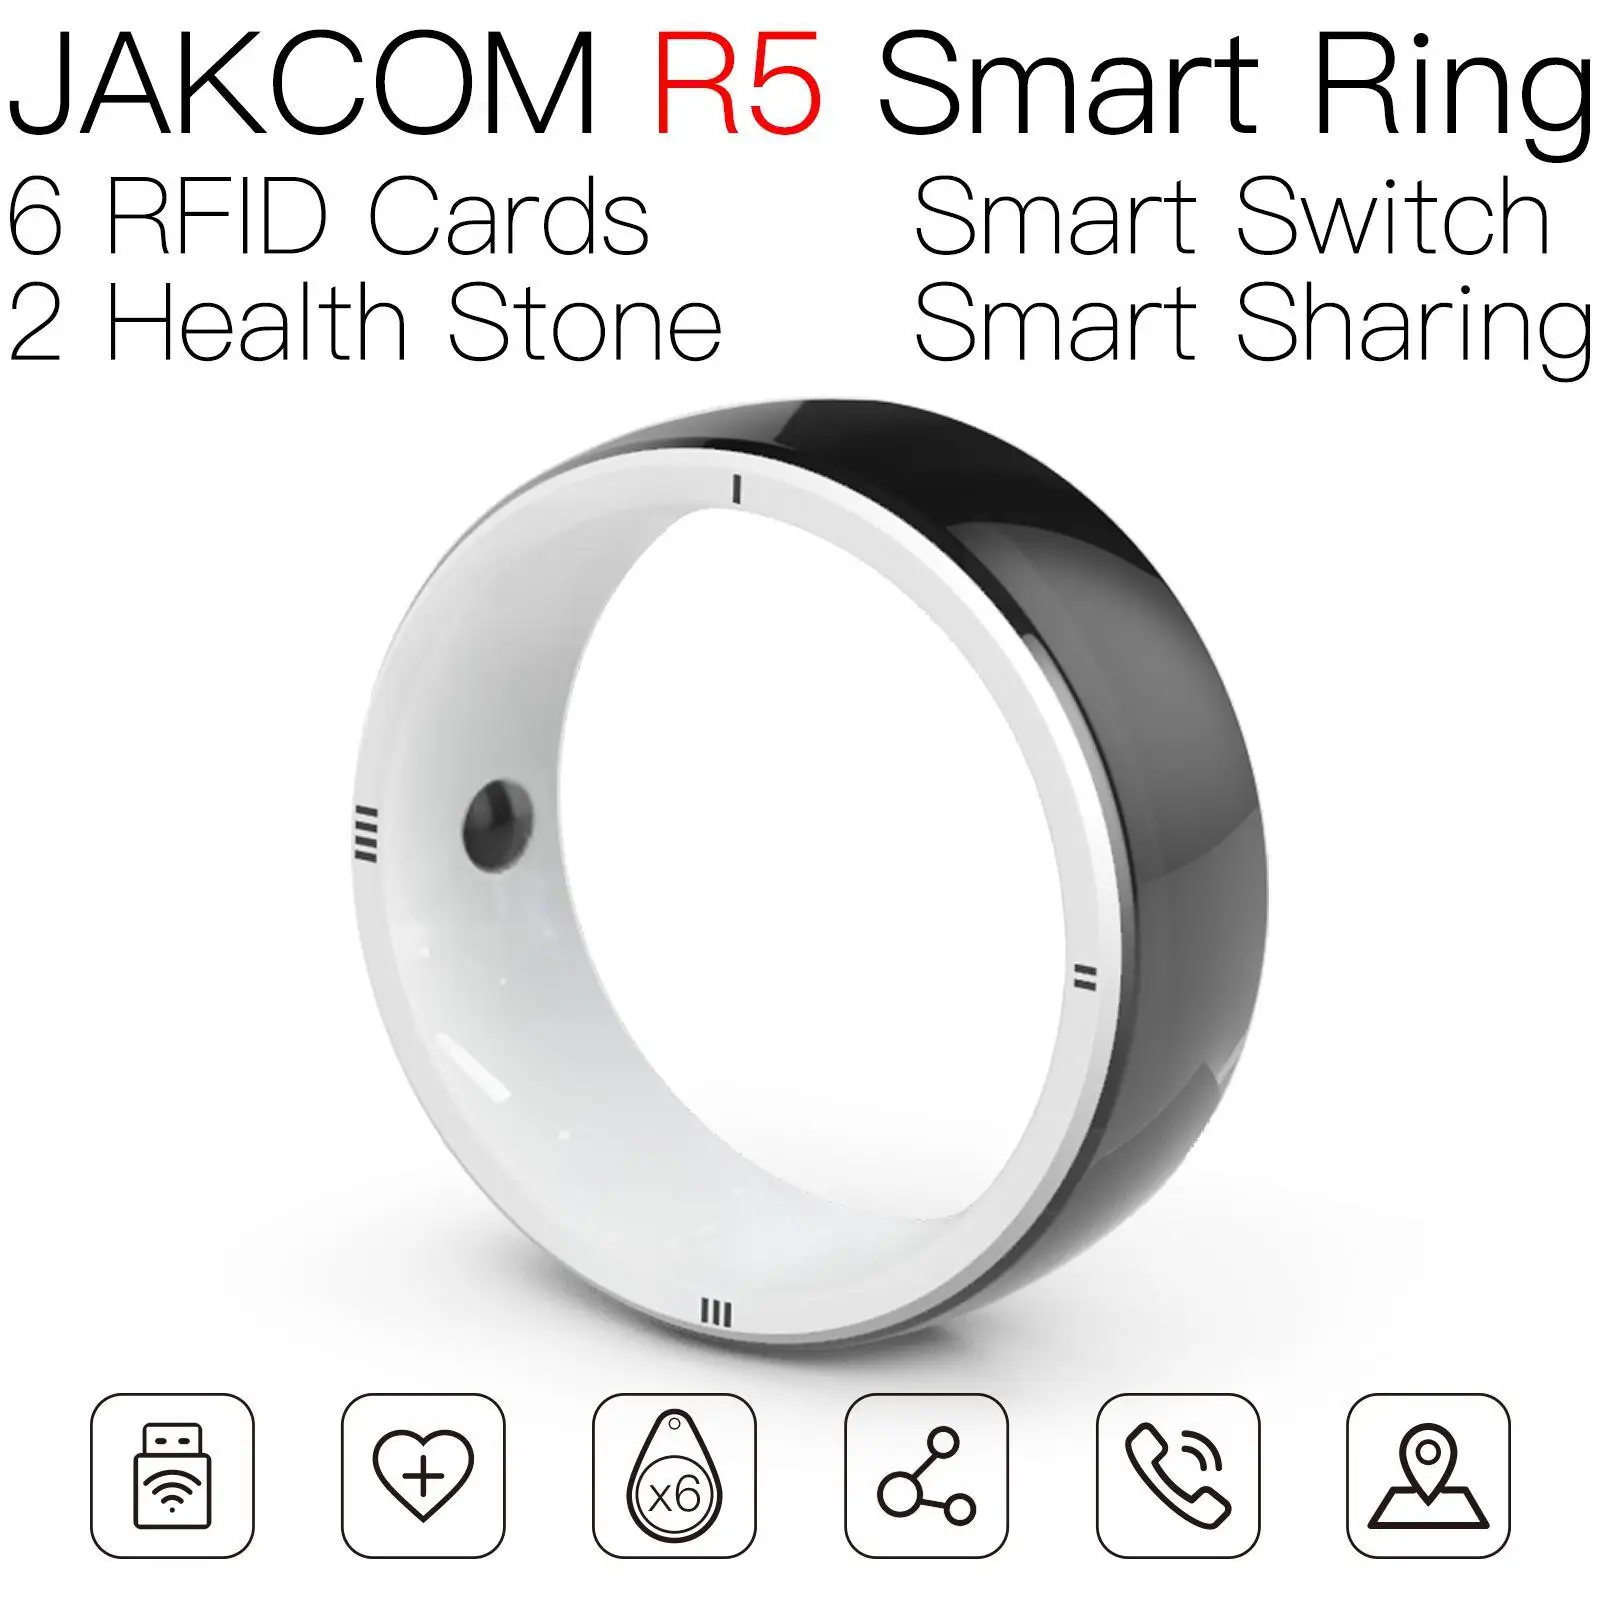 Qué son los Smart Rings y cuál es su utilidad?